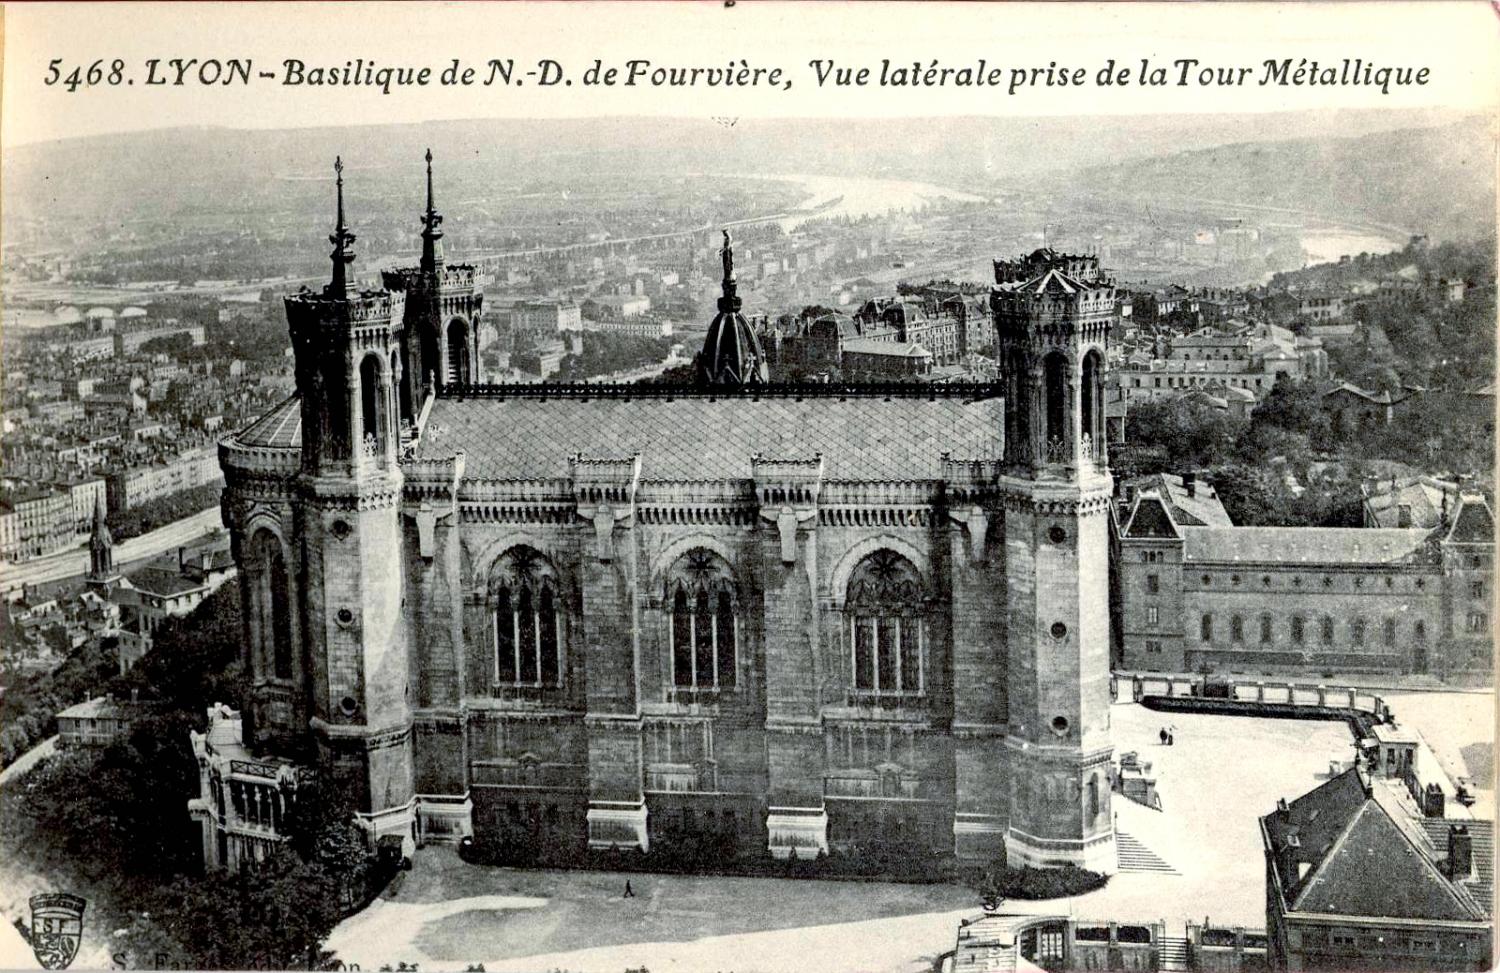 Lyon : Basilique de N.-D. de Fourvière